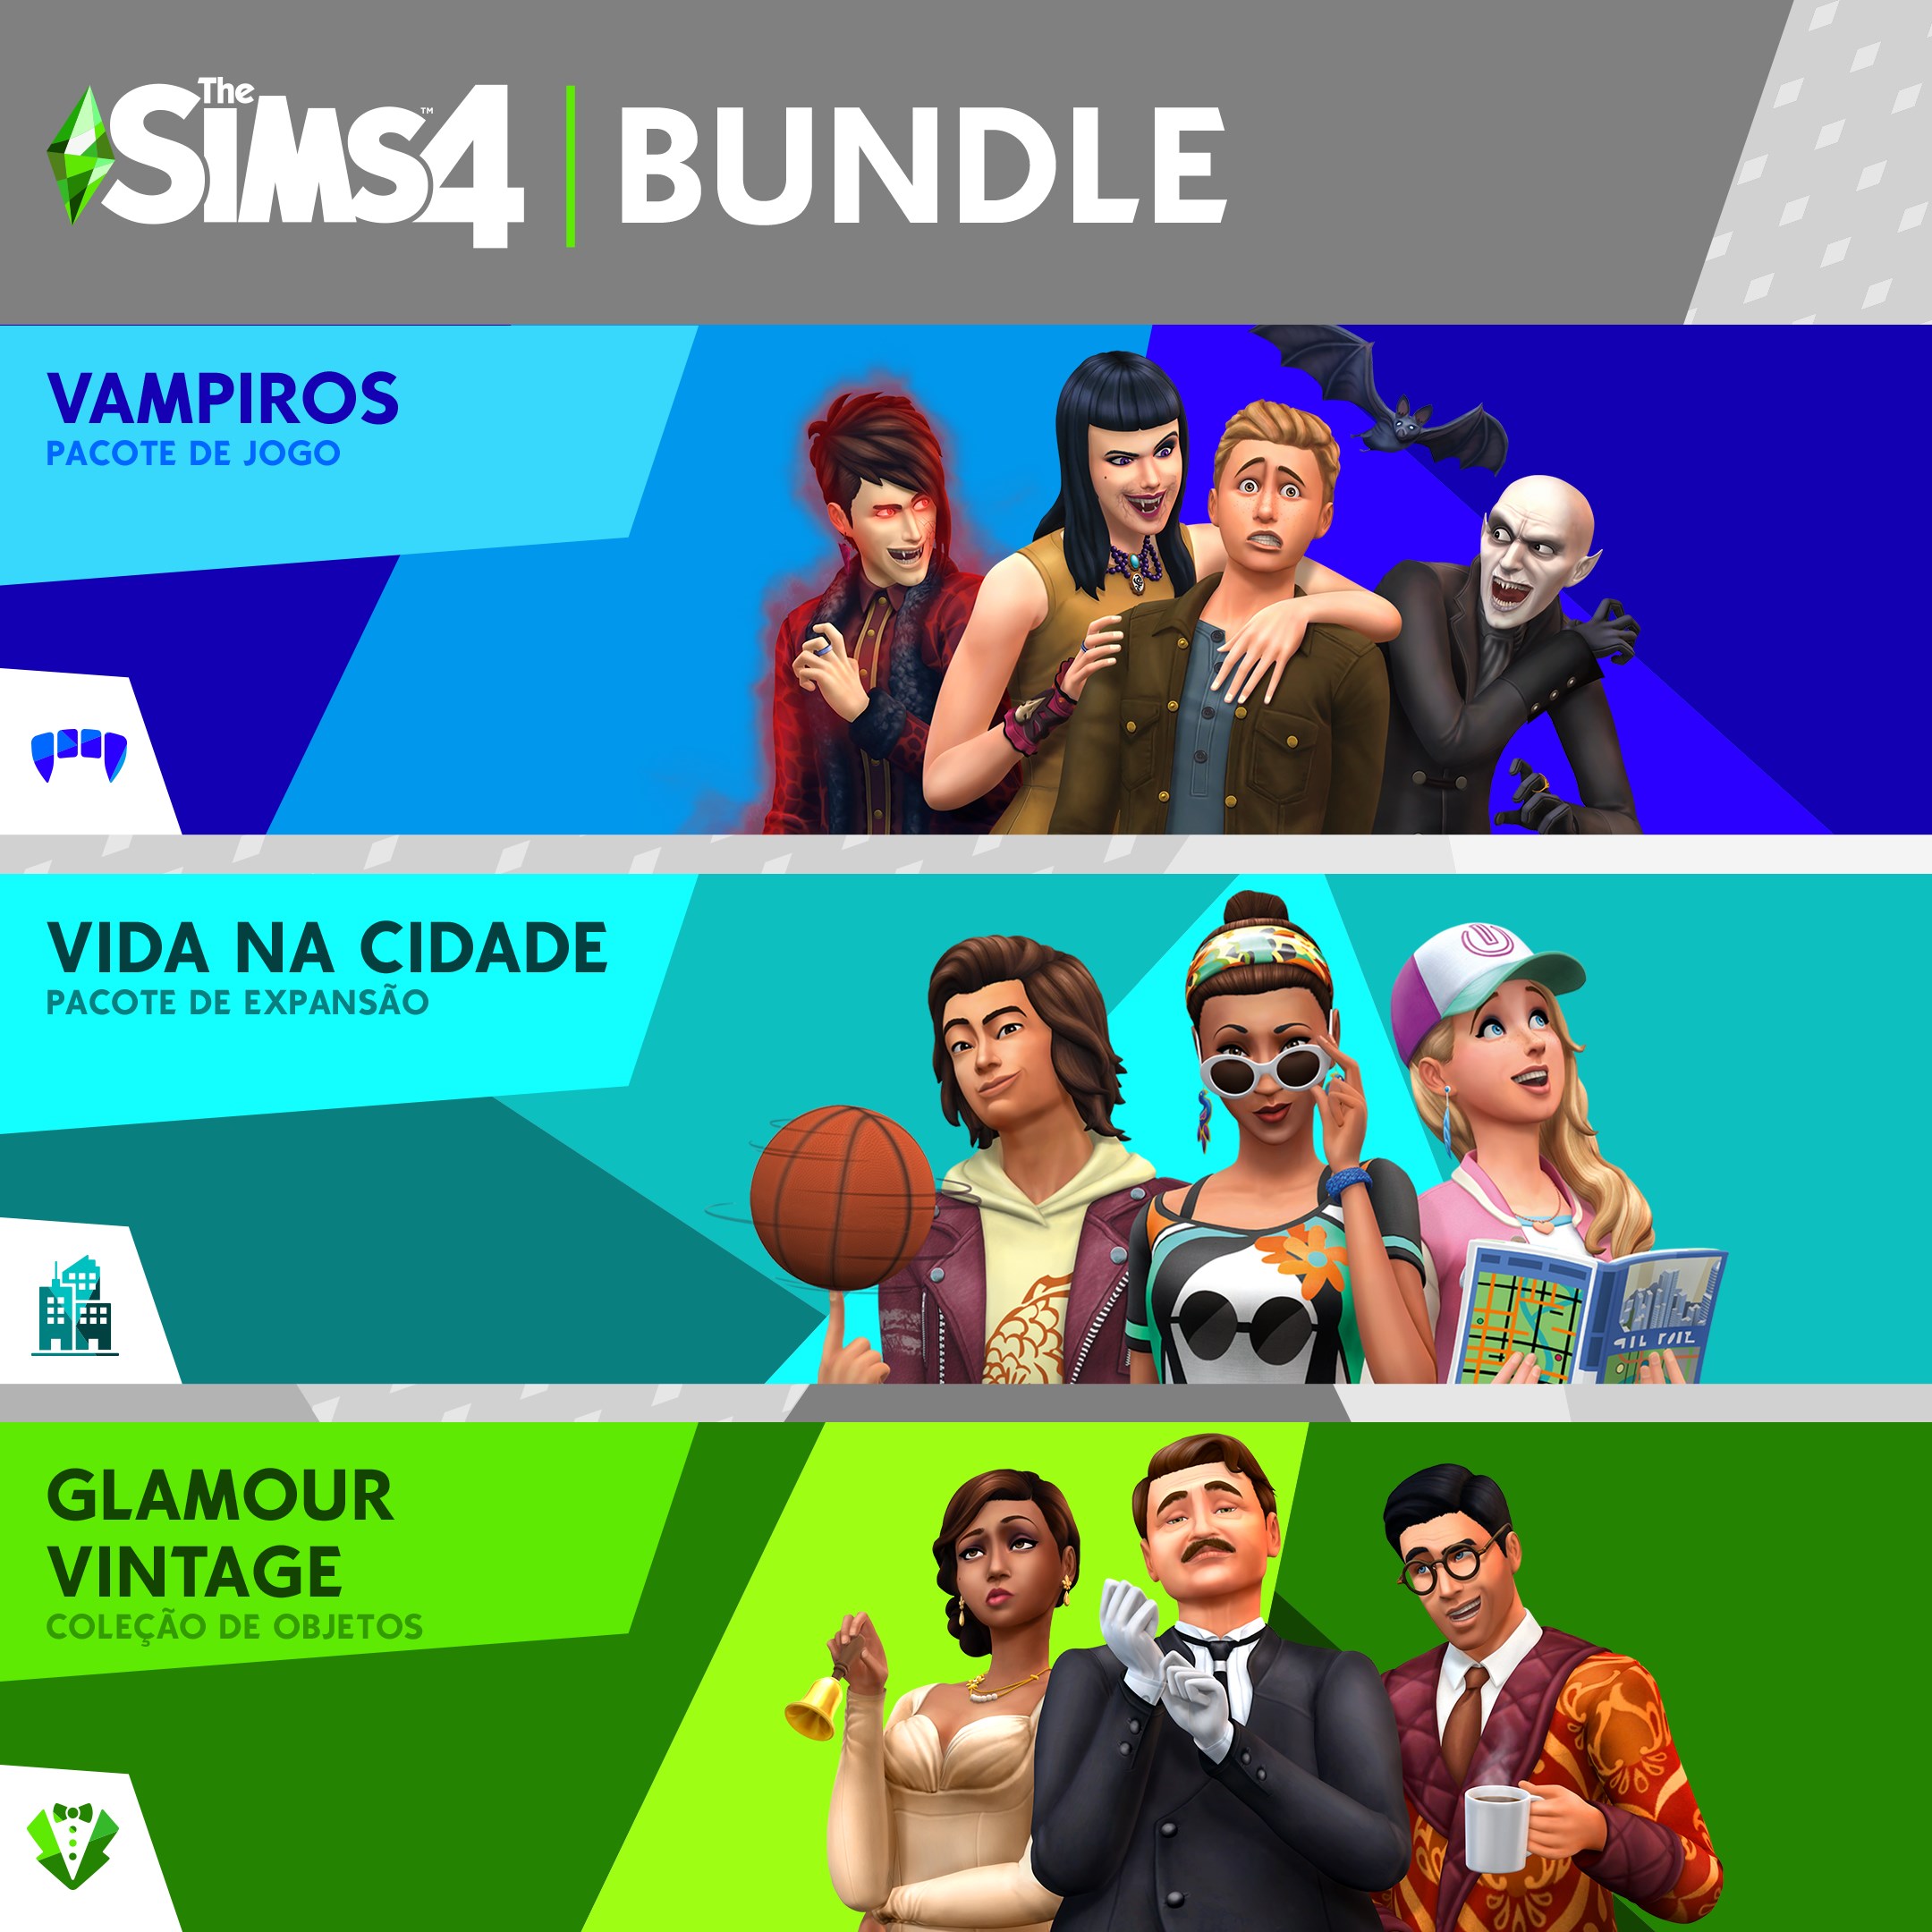 The Sims 4 Bundle - Vida na Cidade, Vampiros, Glamour Vintage Coleção de Objetos